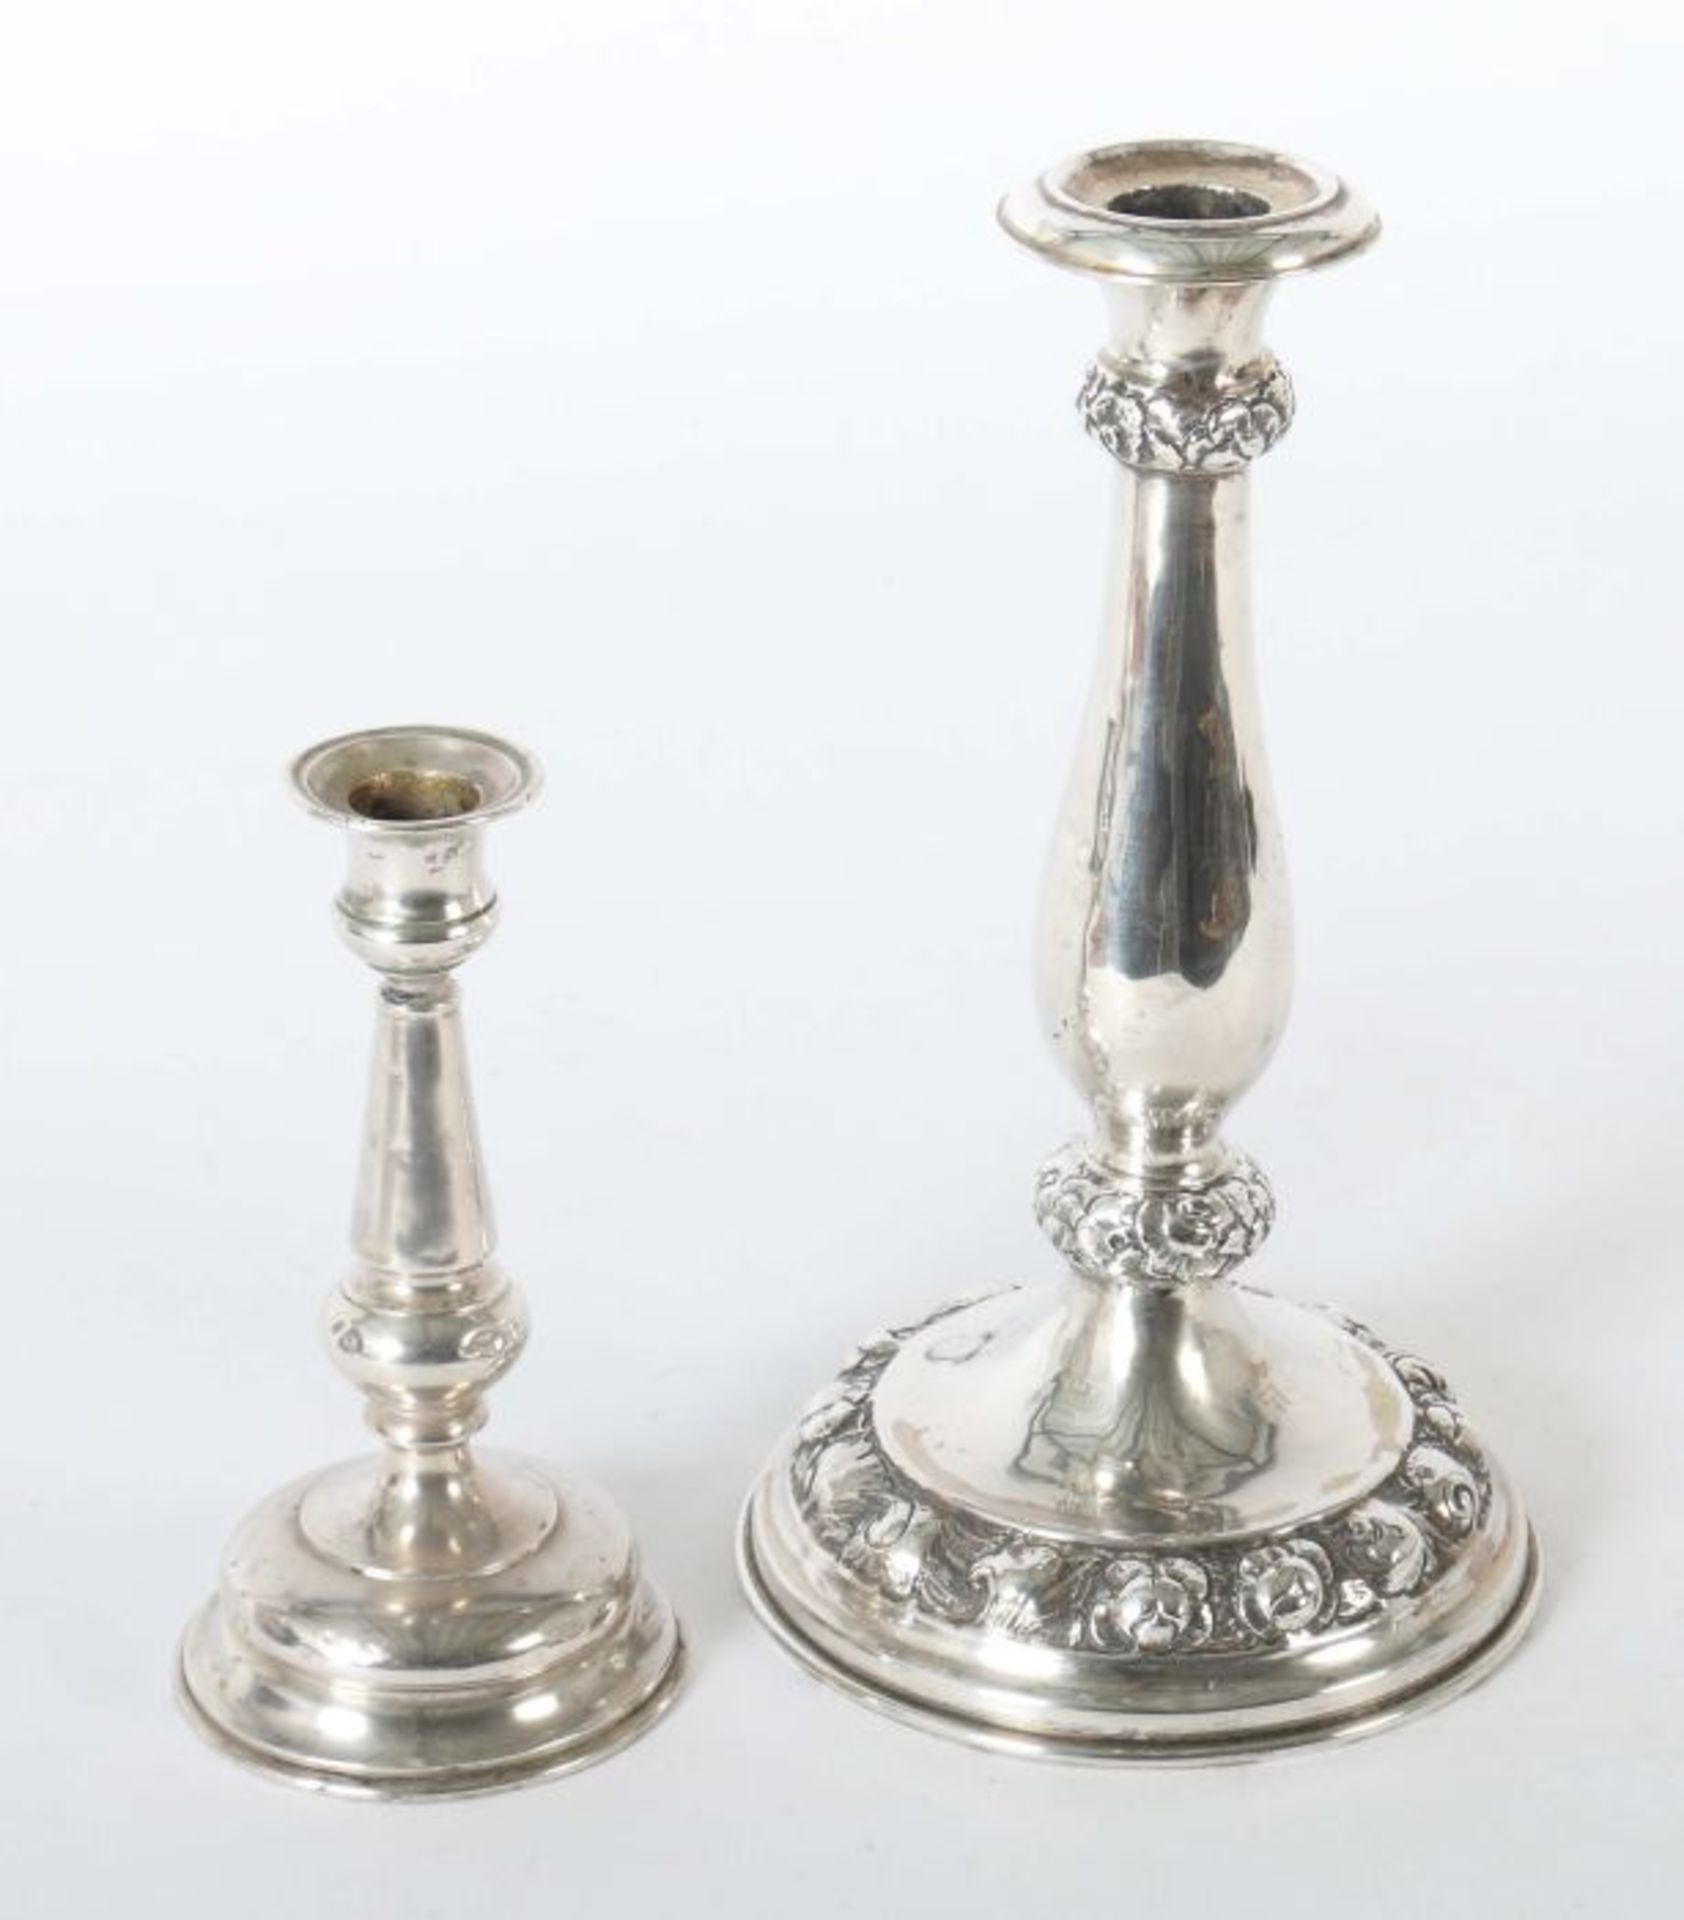 2 variierende Tischleuchter Wien, 2. Hälfte 19. Jh., Silber 800/13-lötig, ca. 378 g, - Bild 2 aus 2